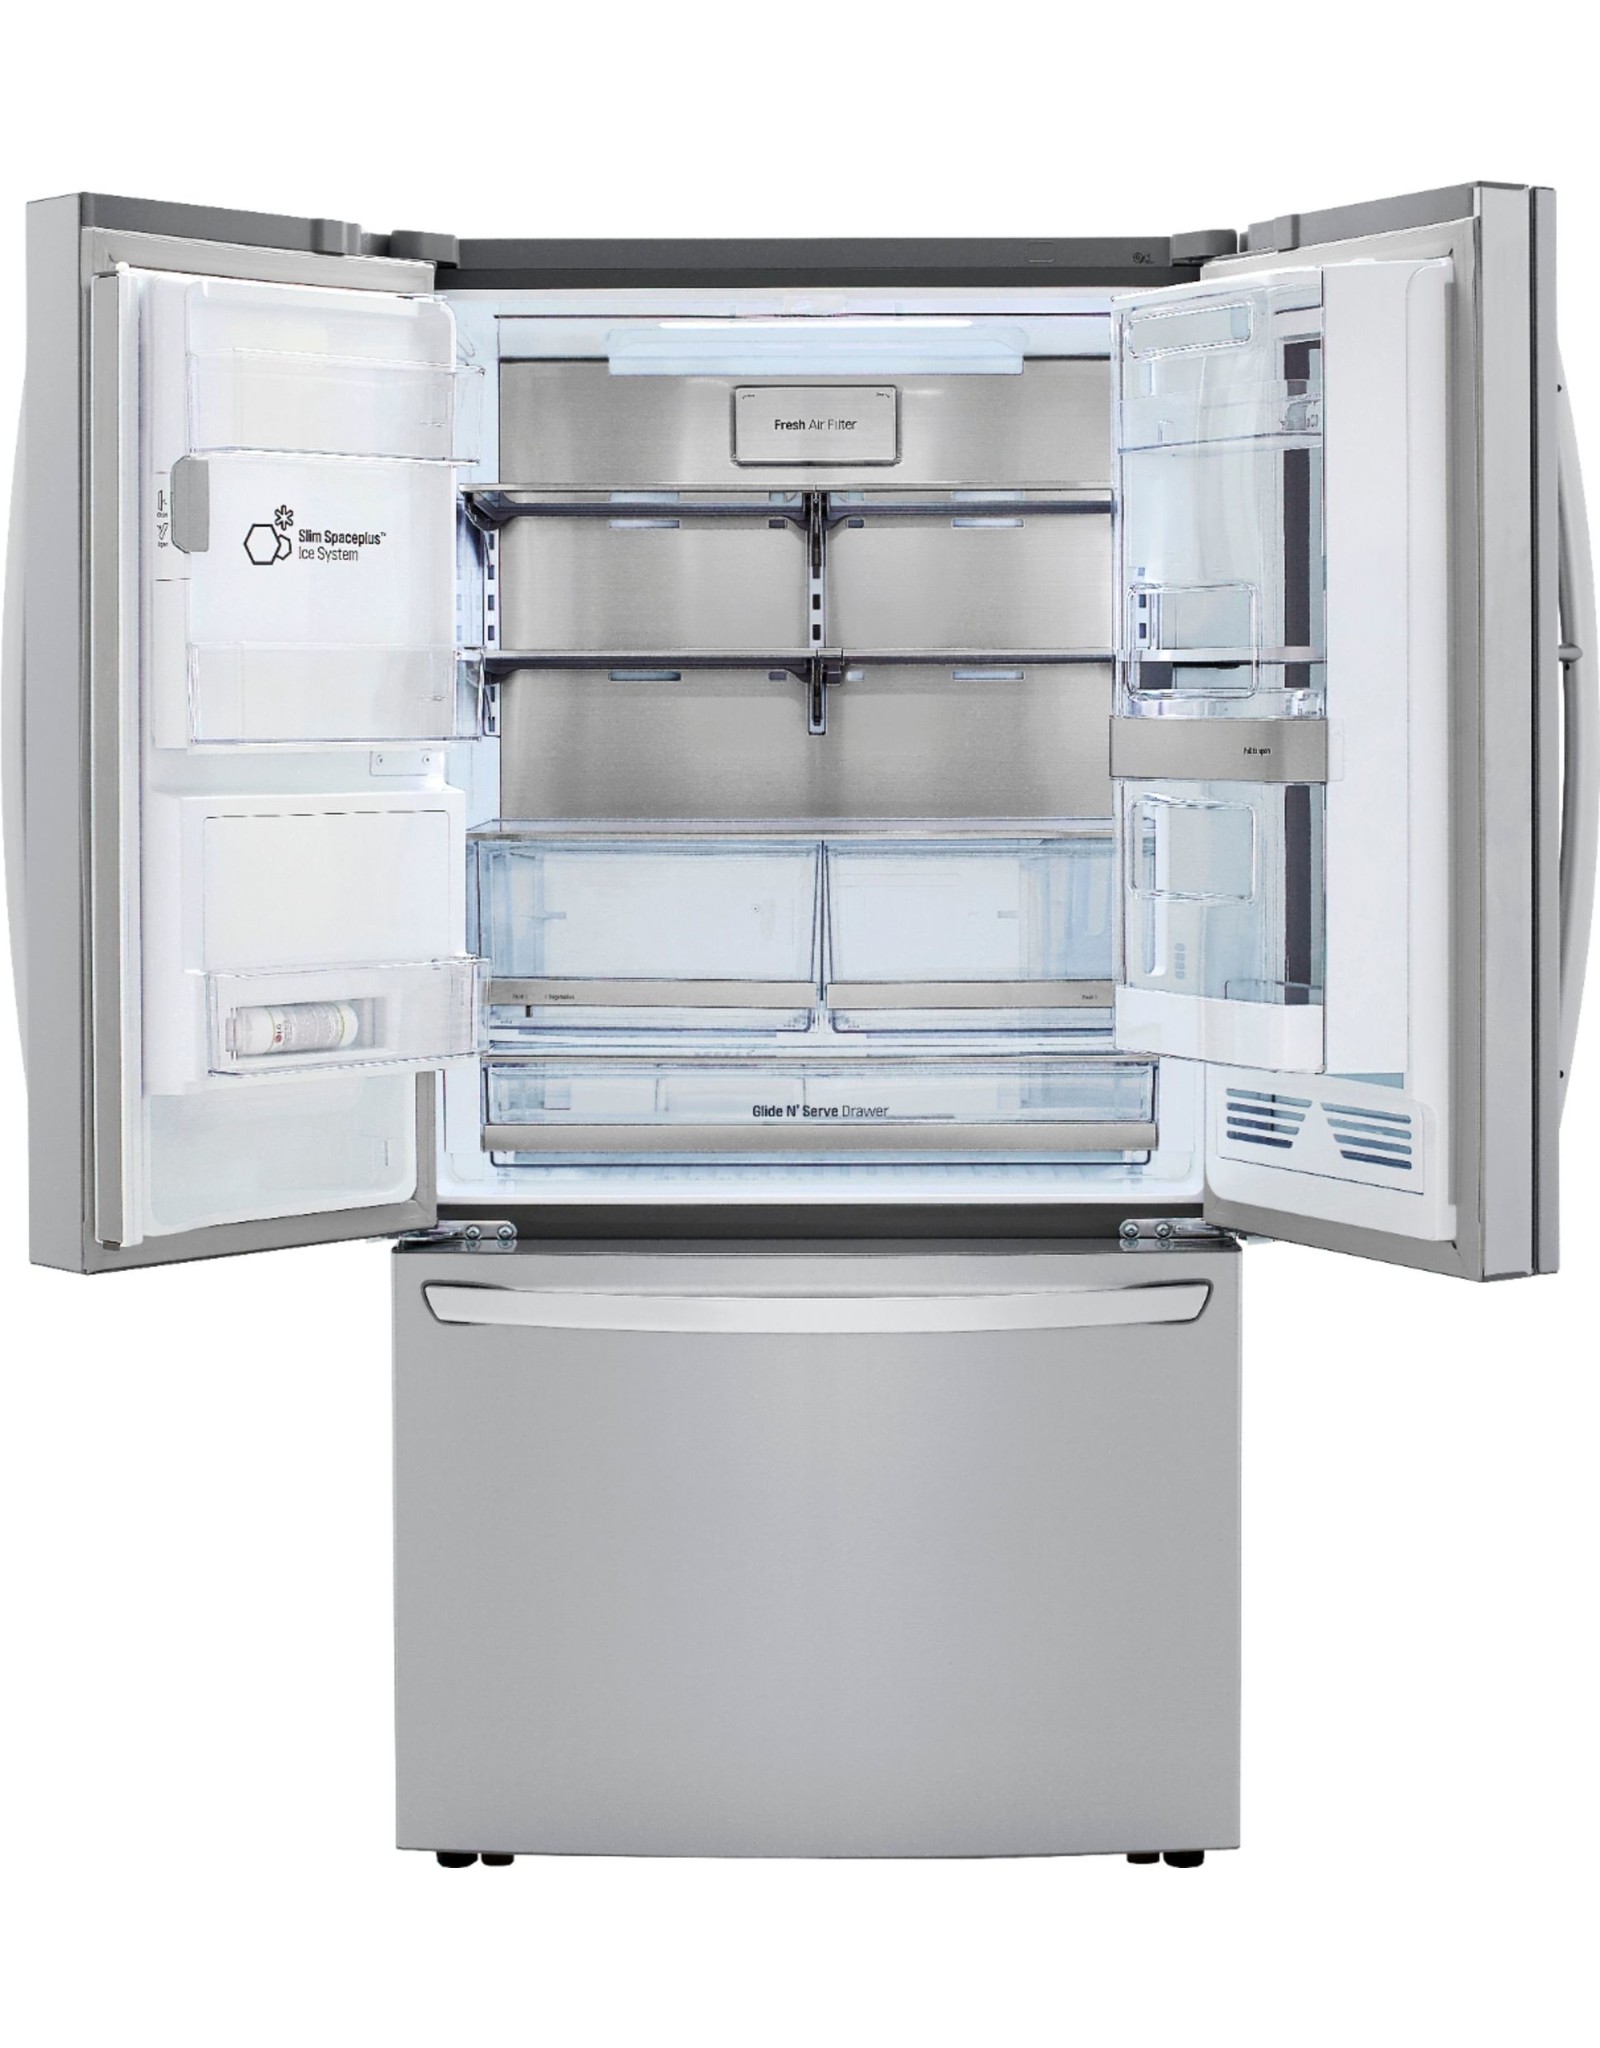 LRFVS3006S 29.7 cu. ft. Smart French Door Refrigerator, InstaView Door-In-Door, Dual Ice w/ Craft Ice in PrintProof Stainless Steel